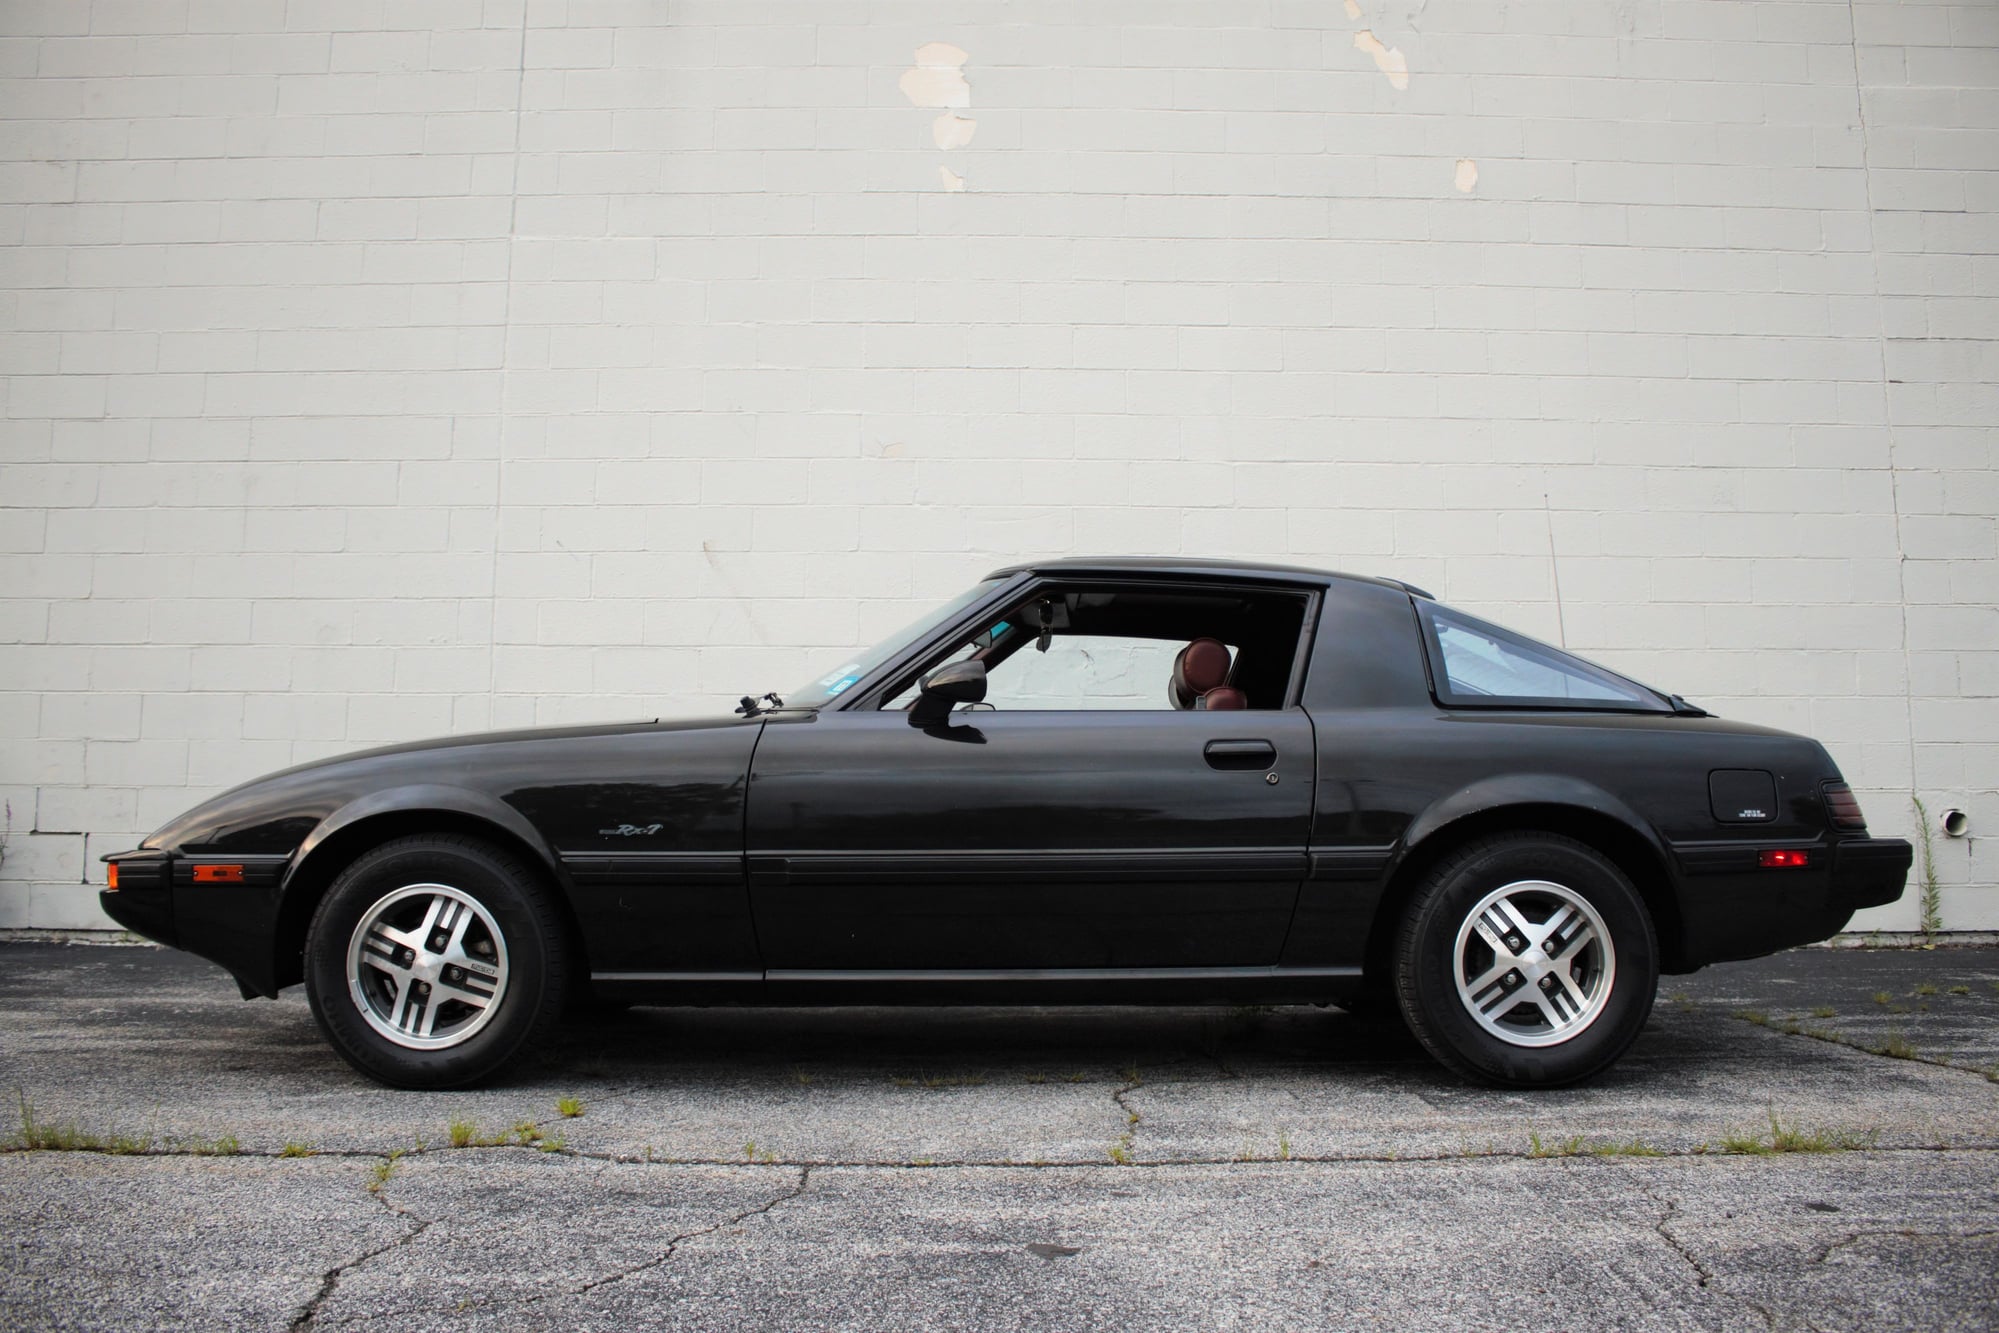 1983 Mazda RX-7 - 1983 Mazda RX-7 GS - 14K Miles - $15,000 - Used - VIN JM1FB331XD0705517 - 13,950 Miles - Other - 2WD - Manual - Coupe - Black - Goshen, NY 10924, United States